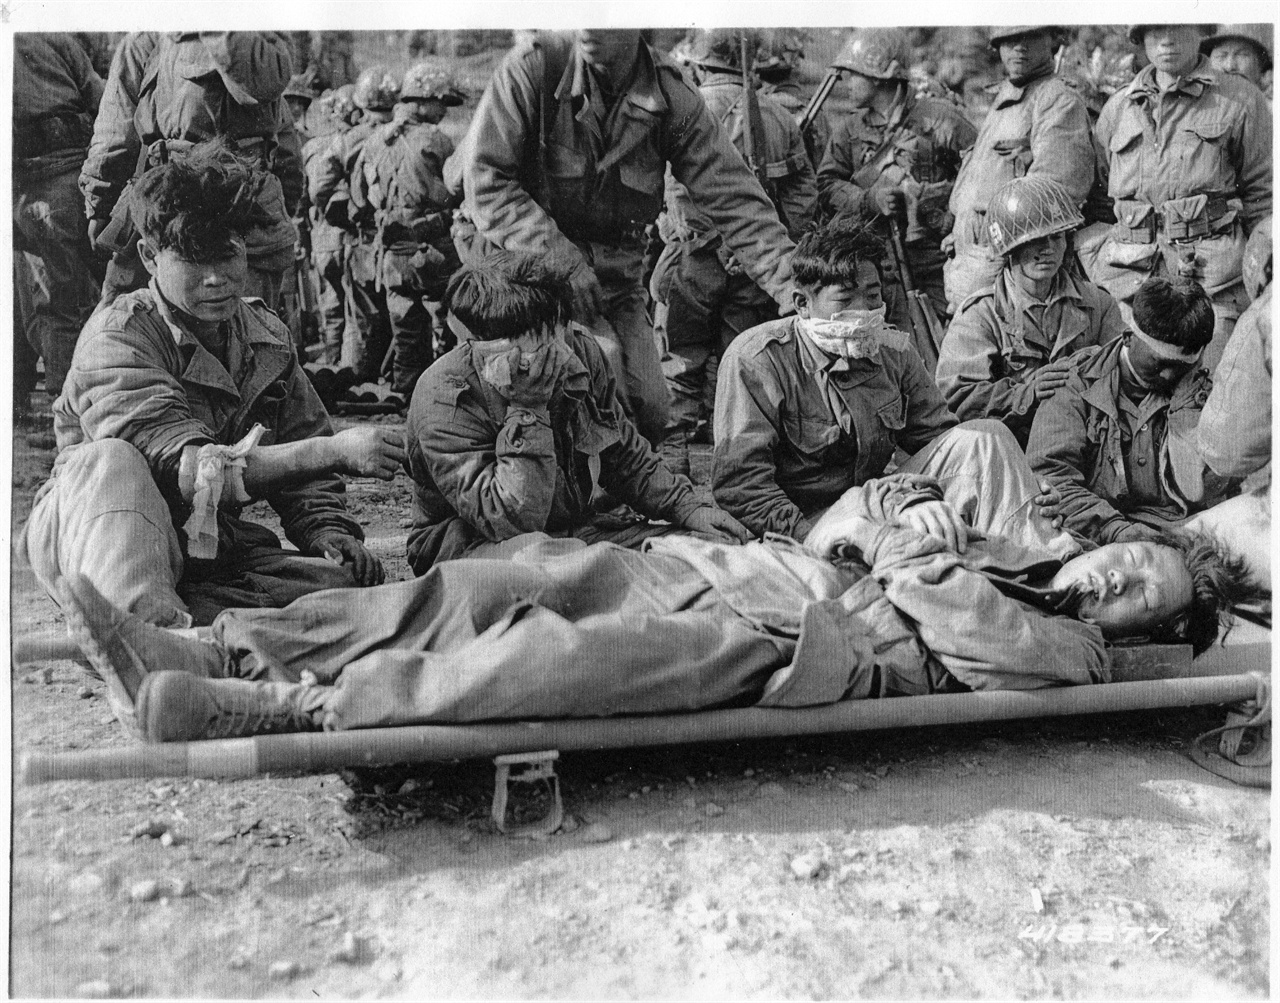 1952. 10. 8. 철원, 백마고지 전투에서 부상당한 국군 